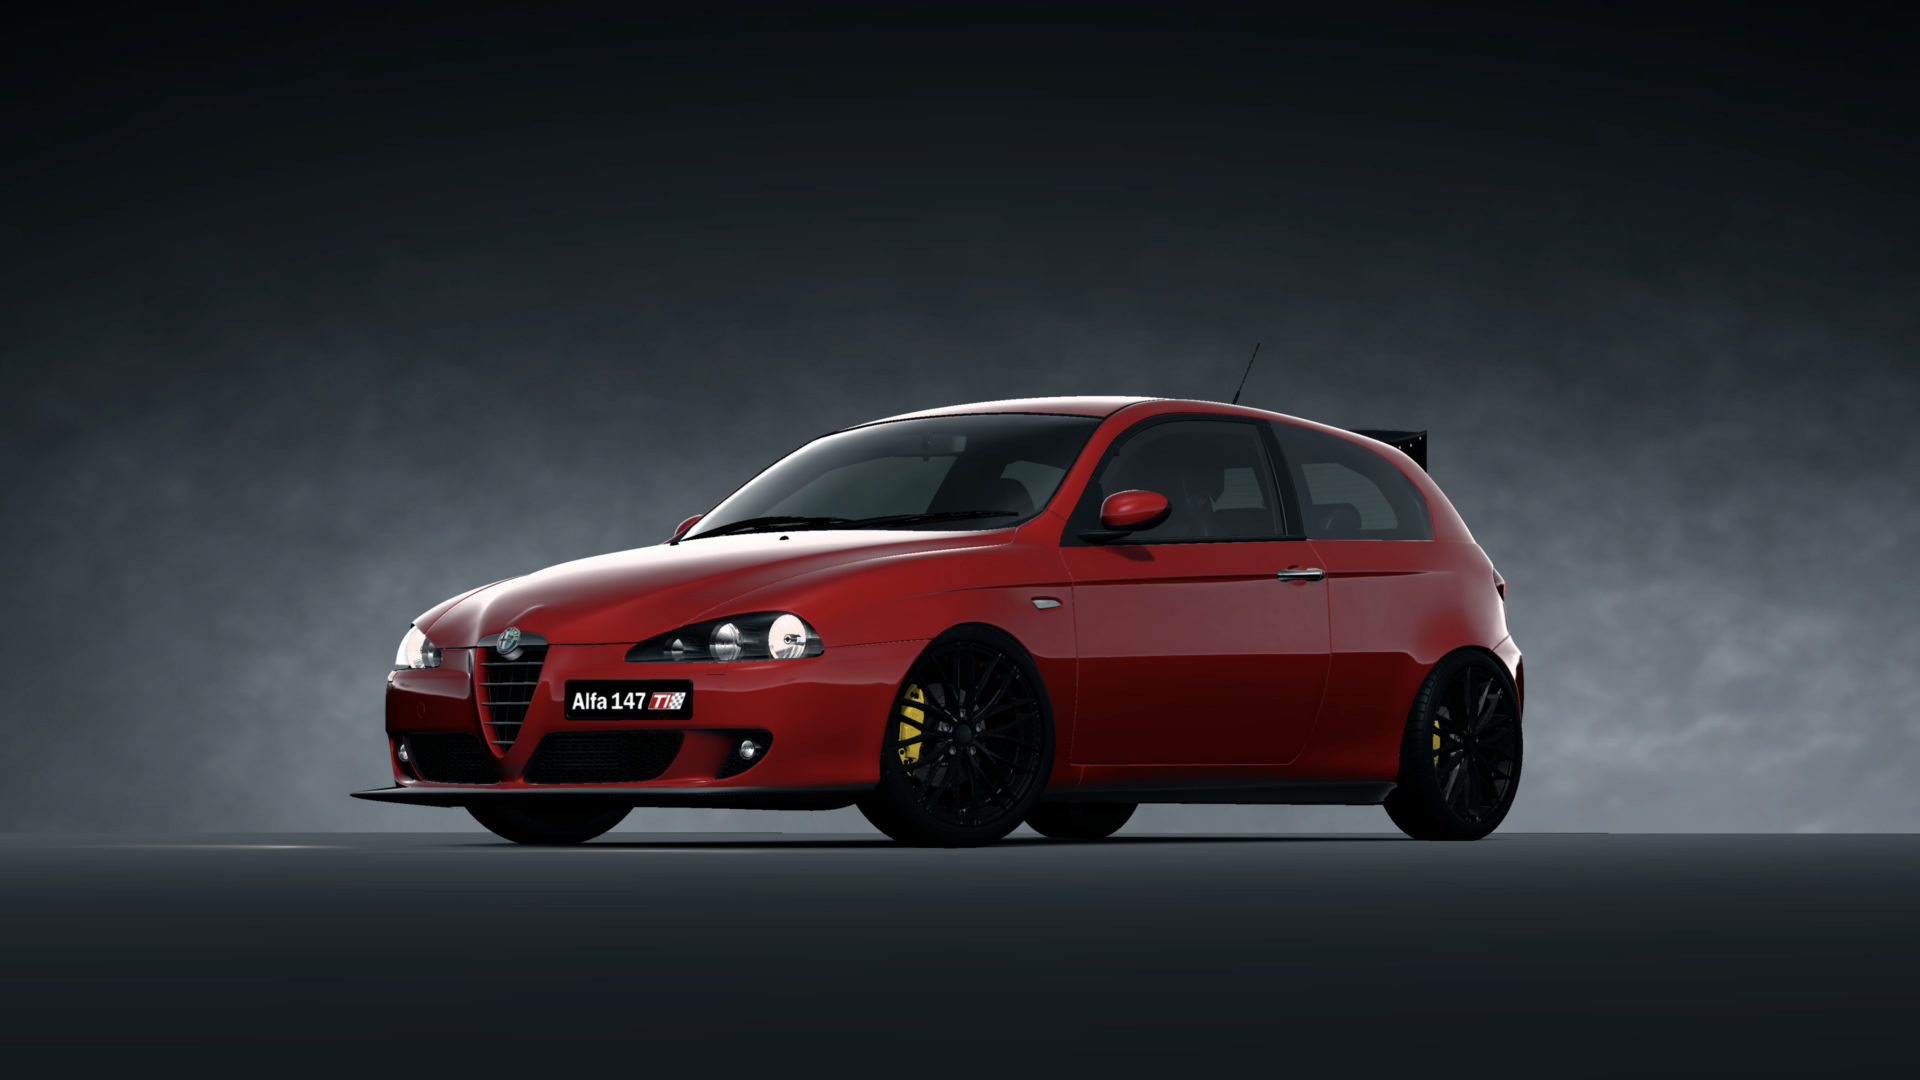 Alfa Romeo 147 TI 2.0 TWIN SPARK '06